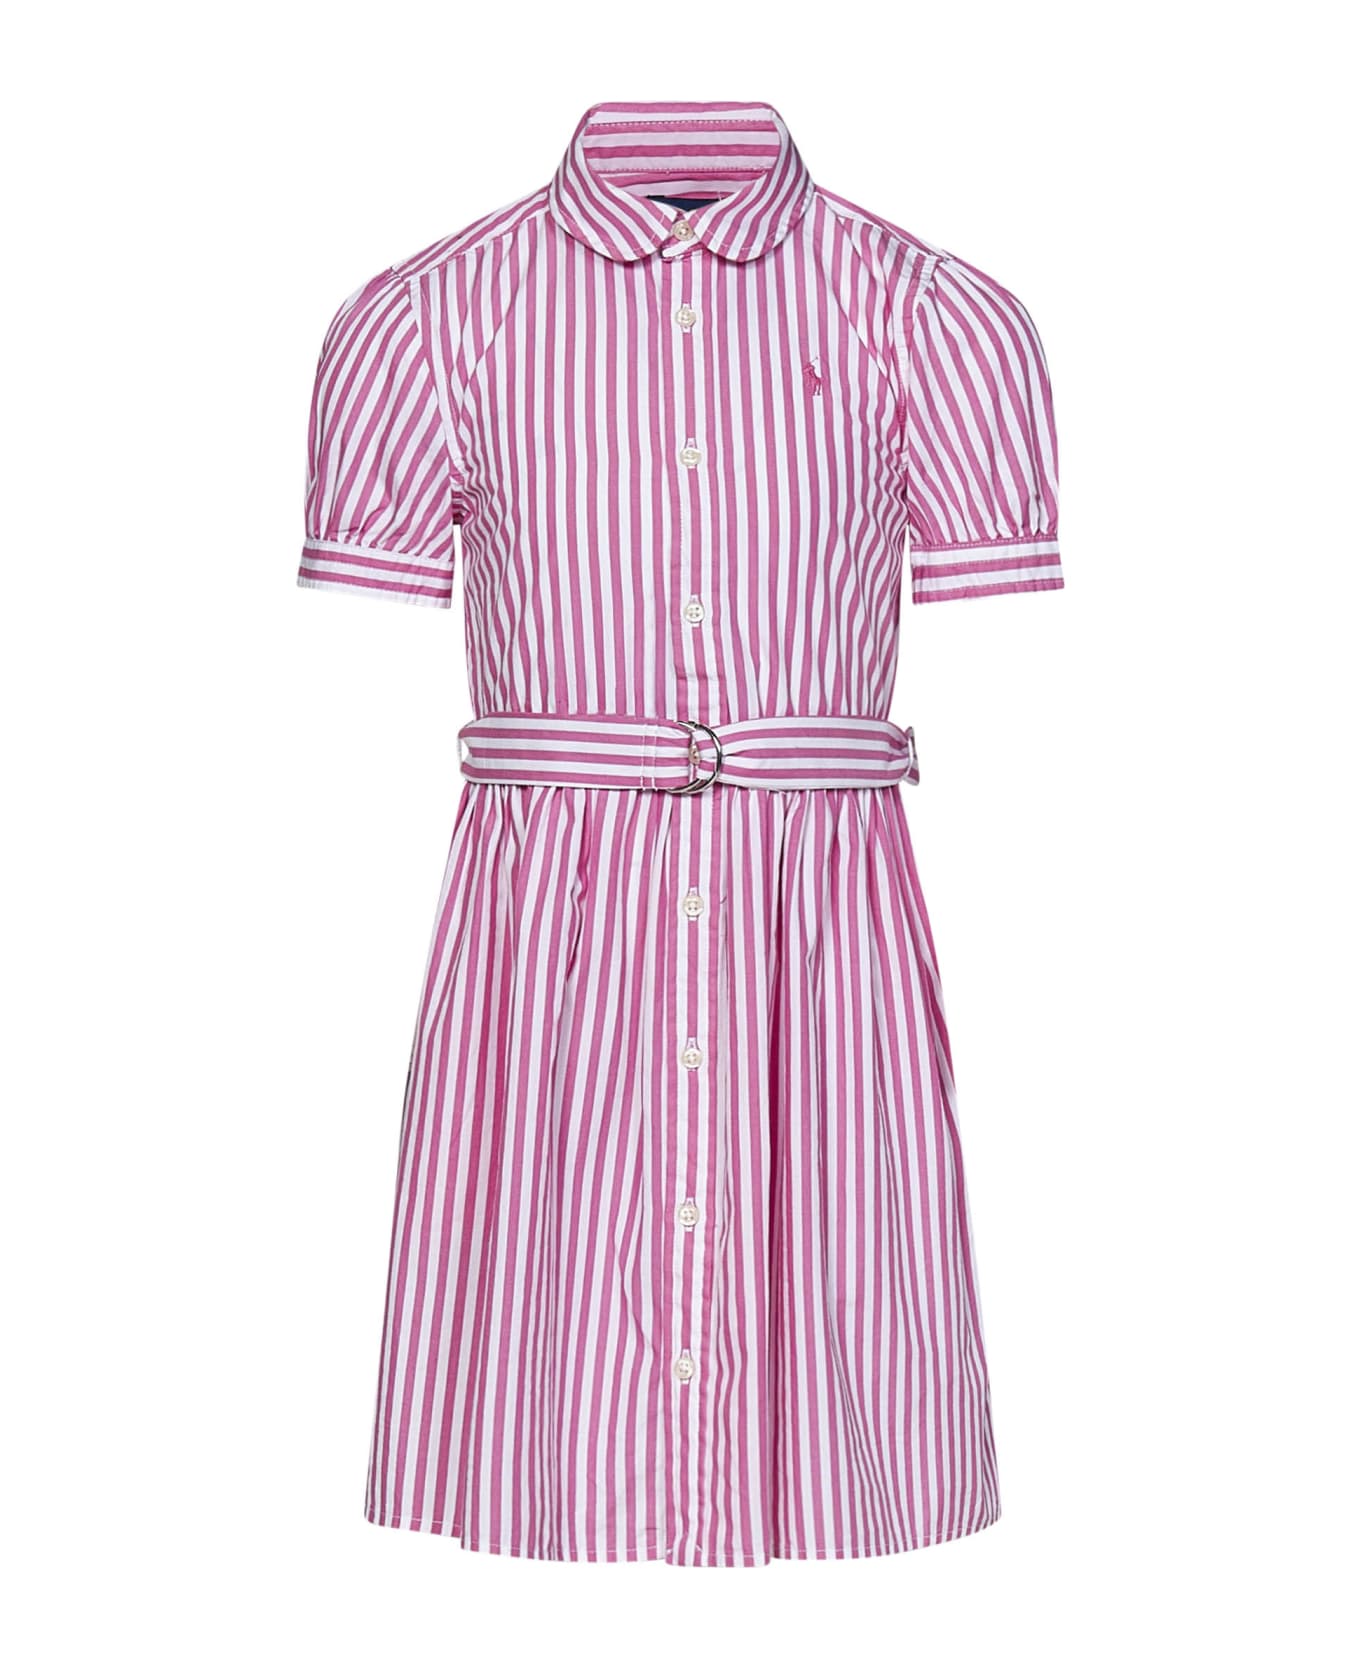 Polo Ralph Lauren Dress - Pink